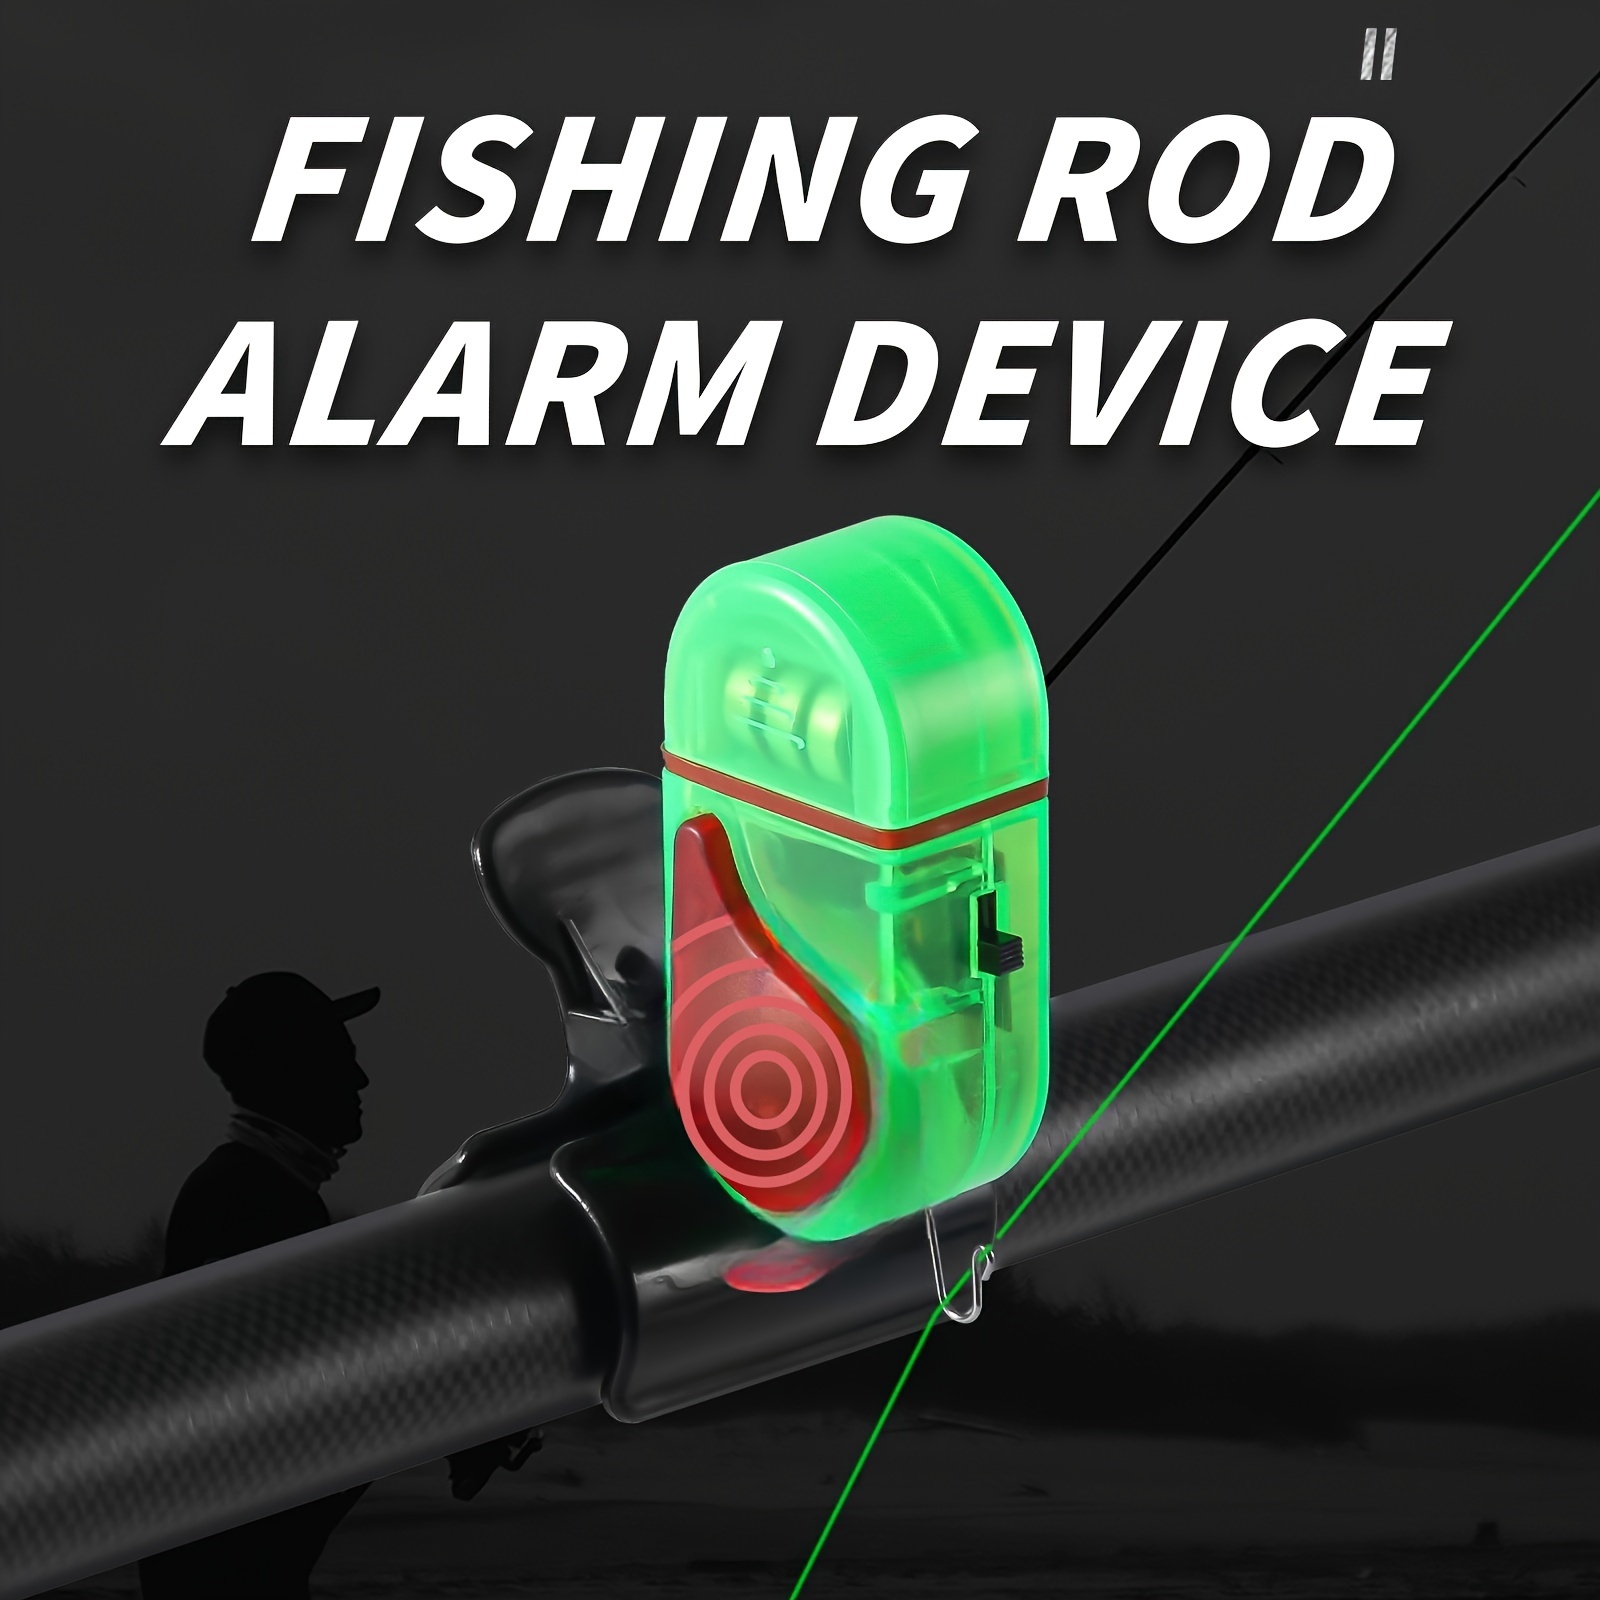 Night Fishing Alarm Electronic Bell Night Light Smart Fishing Alarm